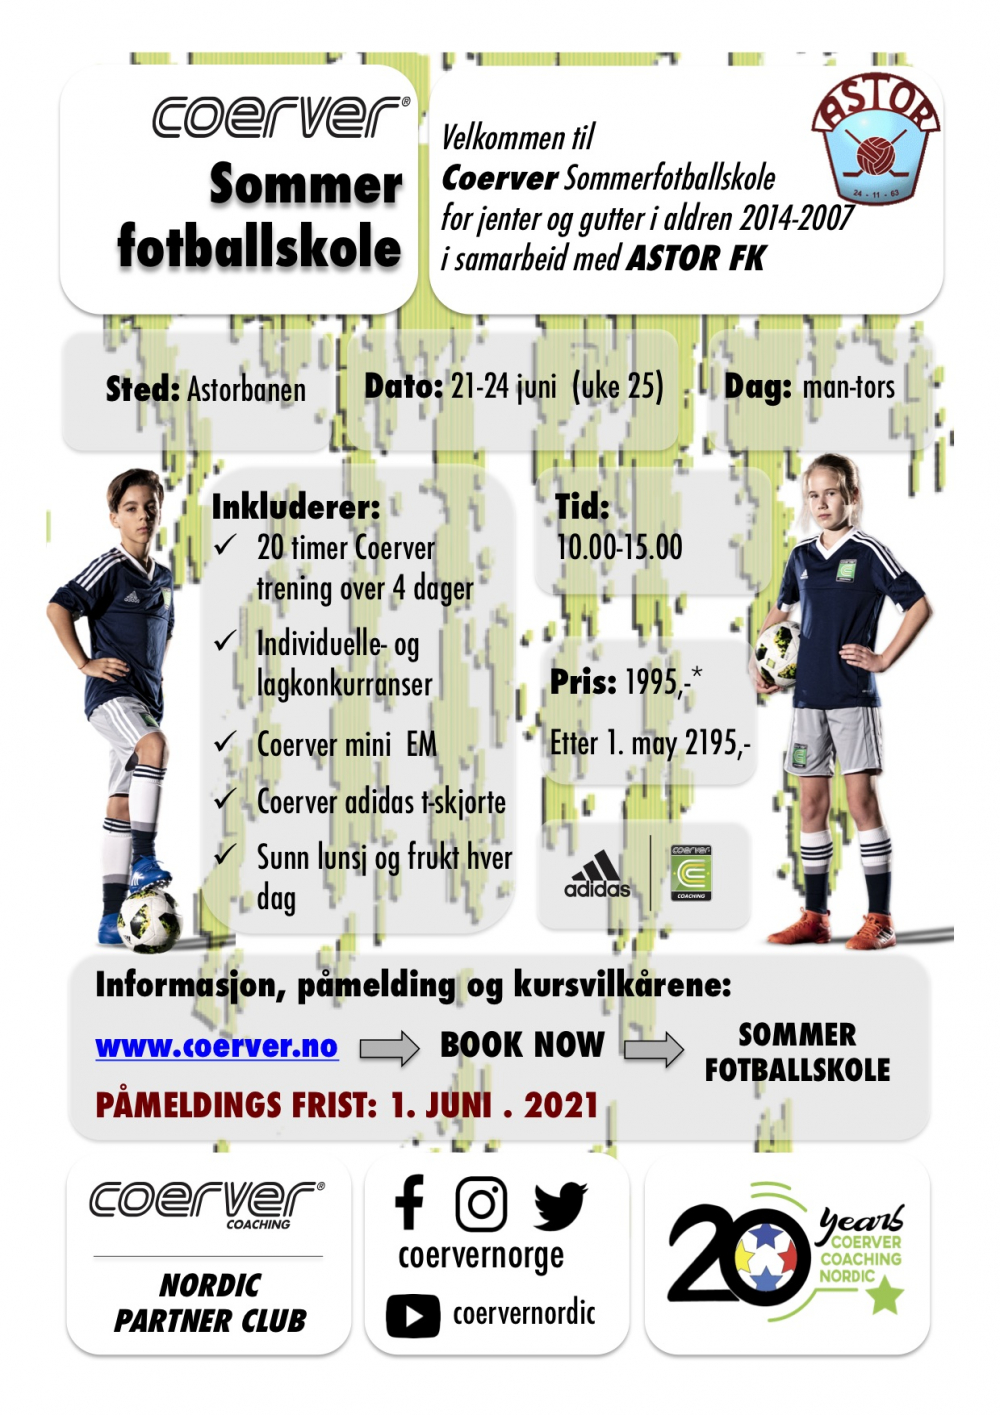 Coerver Sommerfotballskole hos Astor FK 2021 (uke 25)